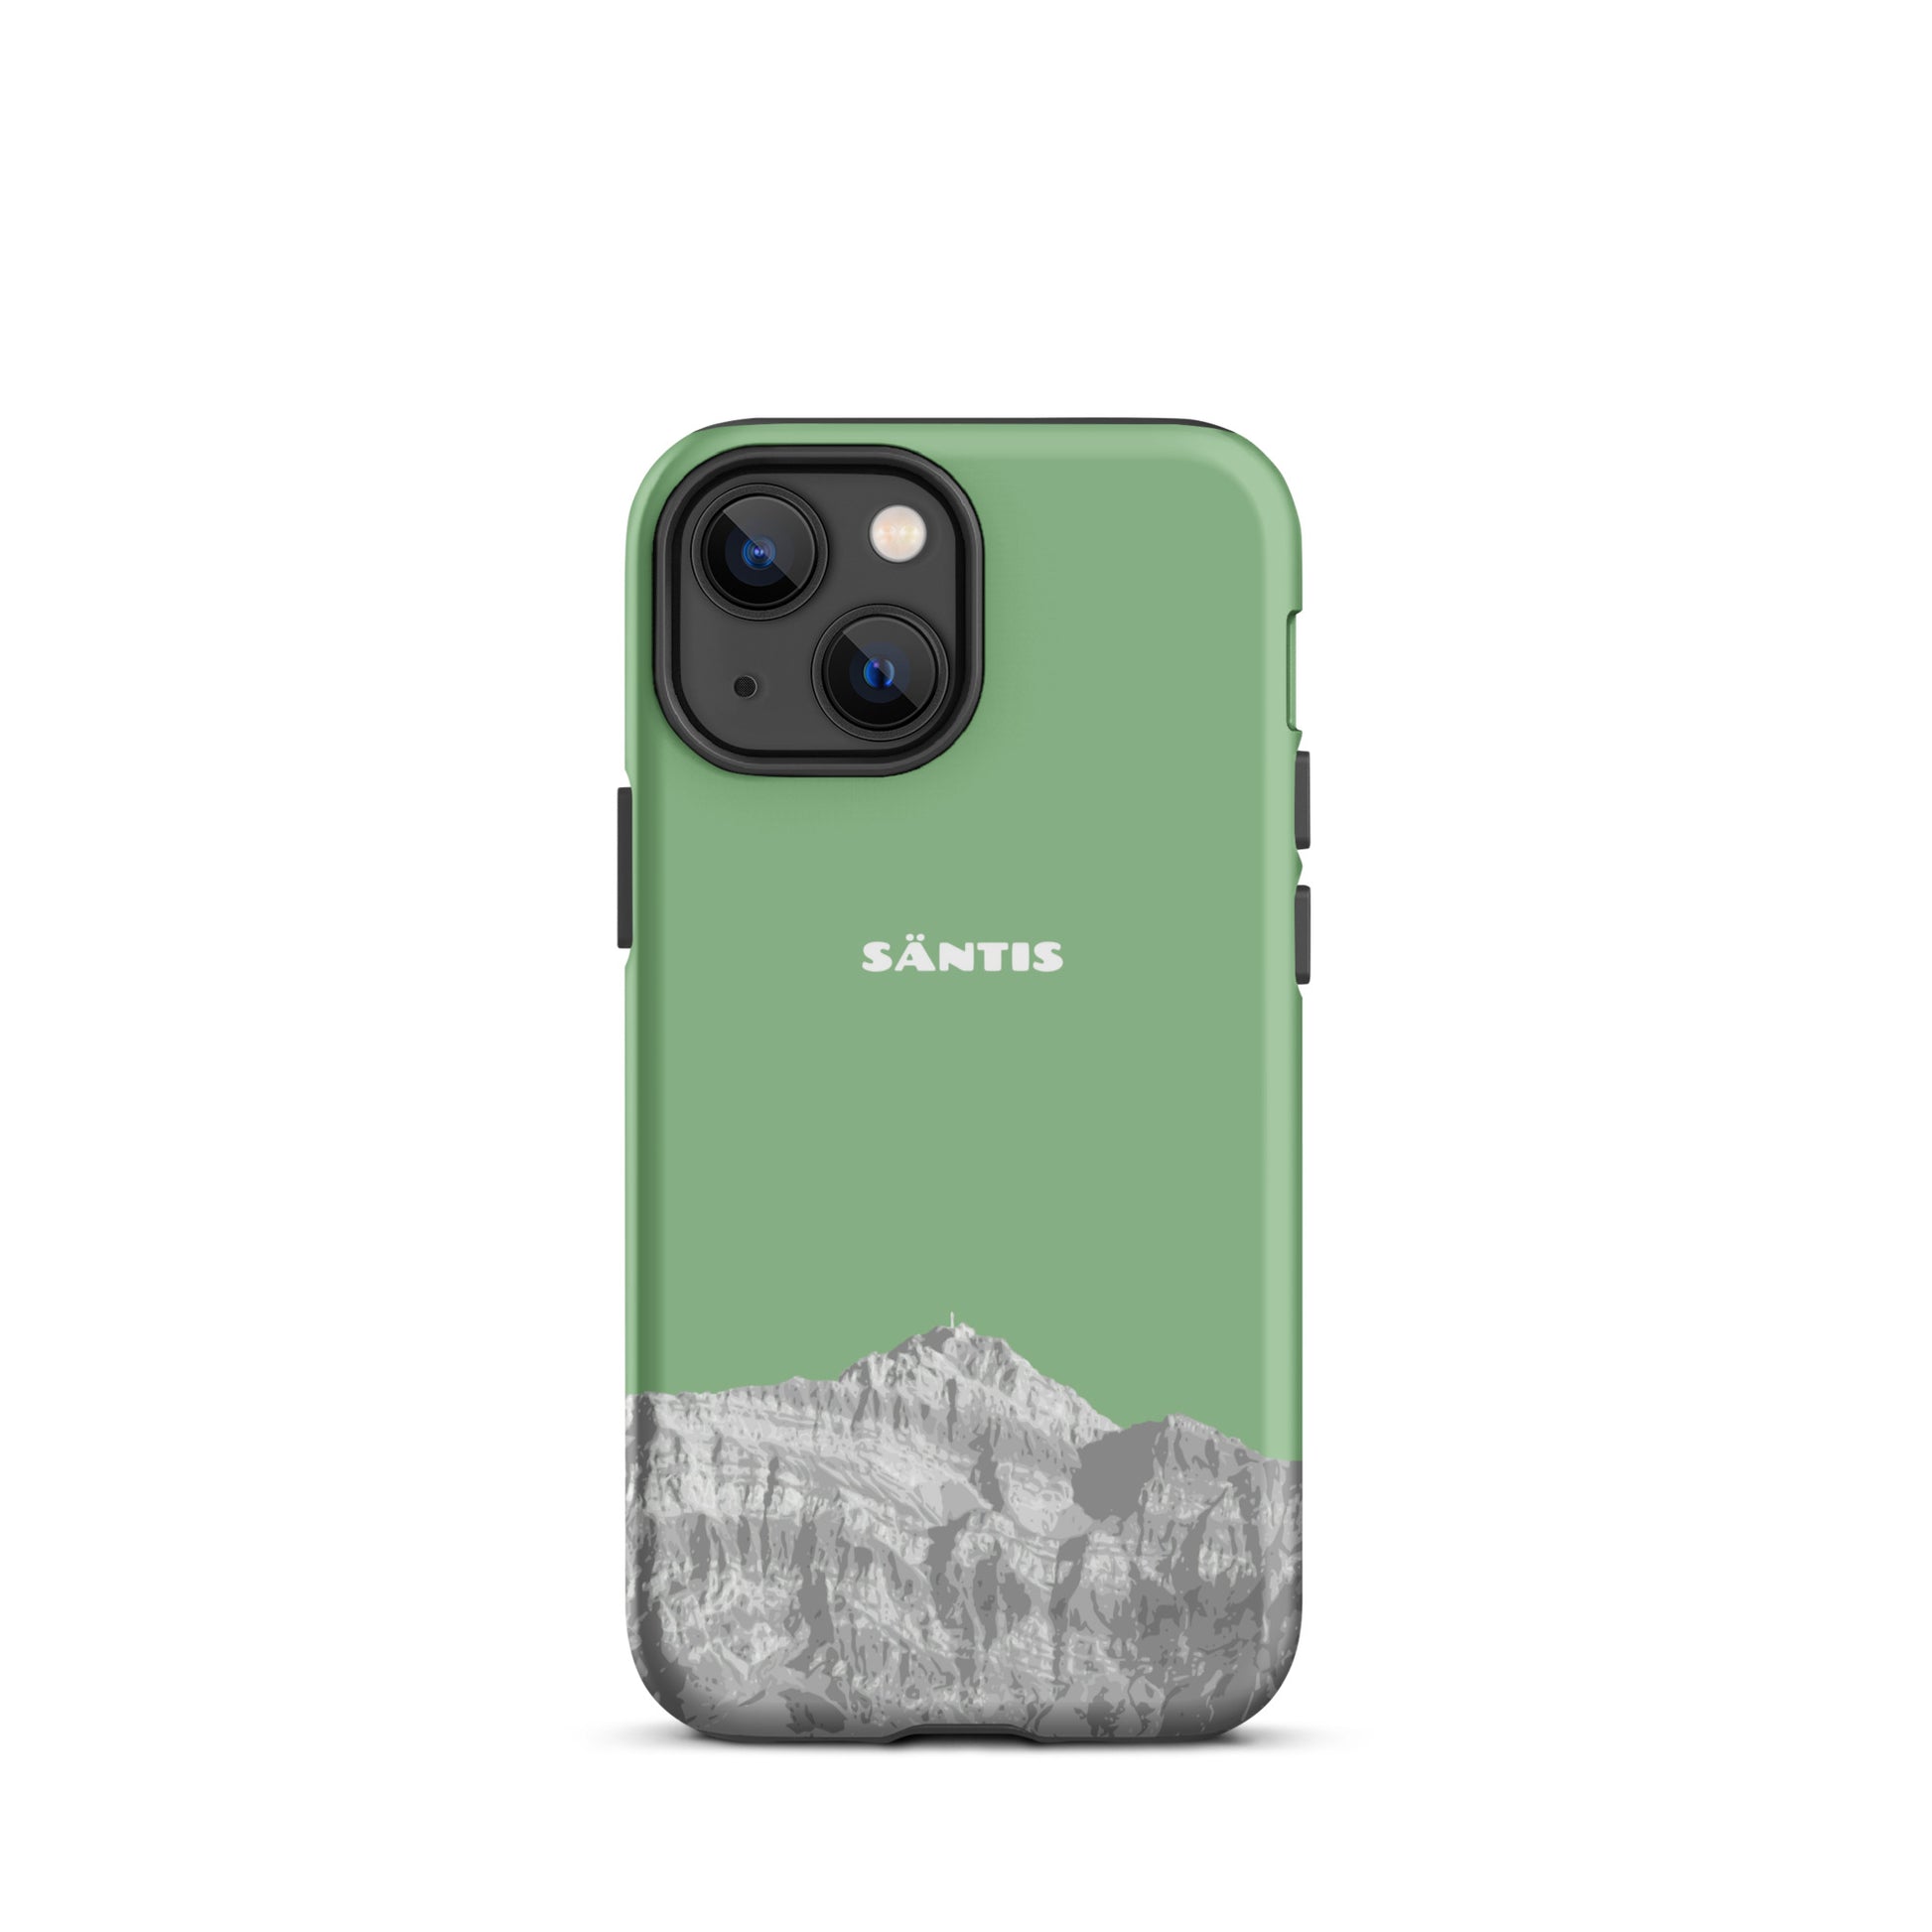 Hülle für das iPhone 13 Mini von Apple in der Farbe Hellgrün, dass den Säntis im Alpstein zeigt.